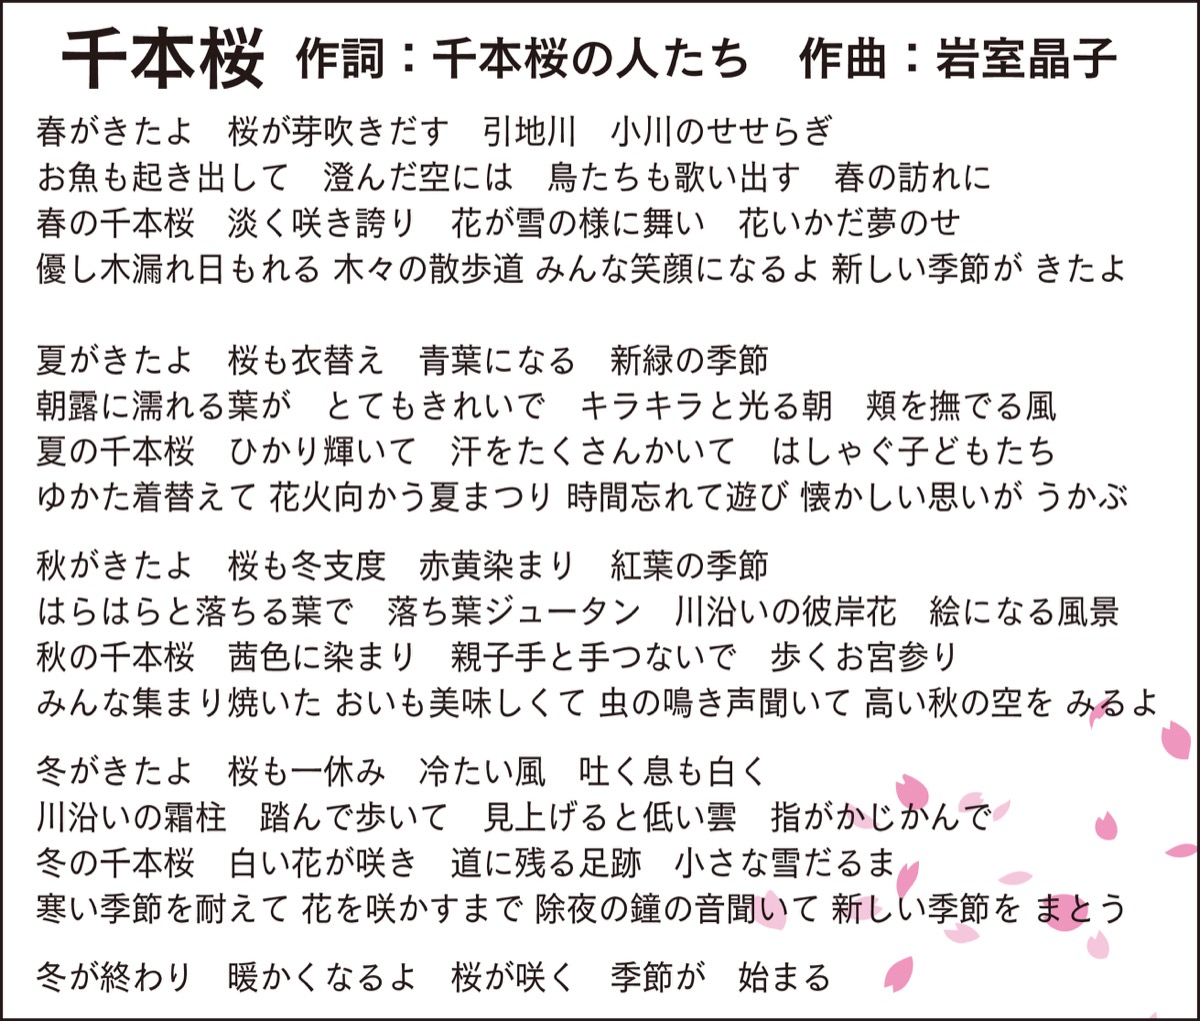 千本桜の誇り 歌に 11月に披露 動画制作も 大和 タウンニュース